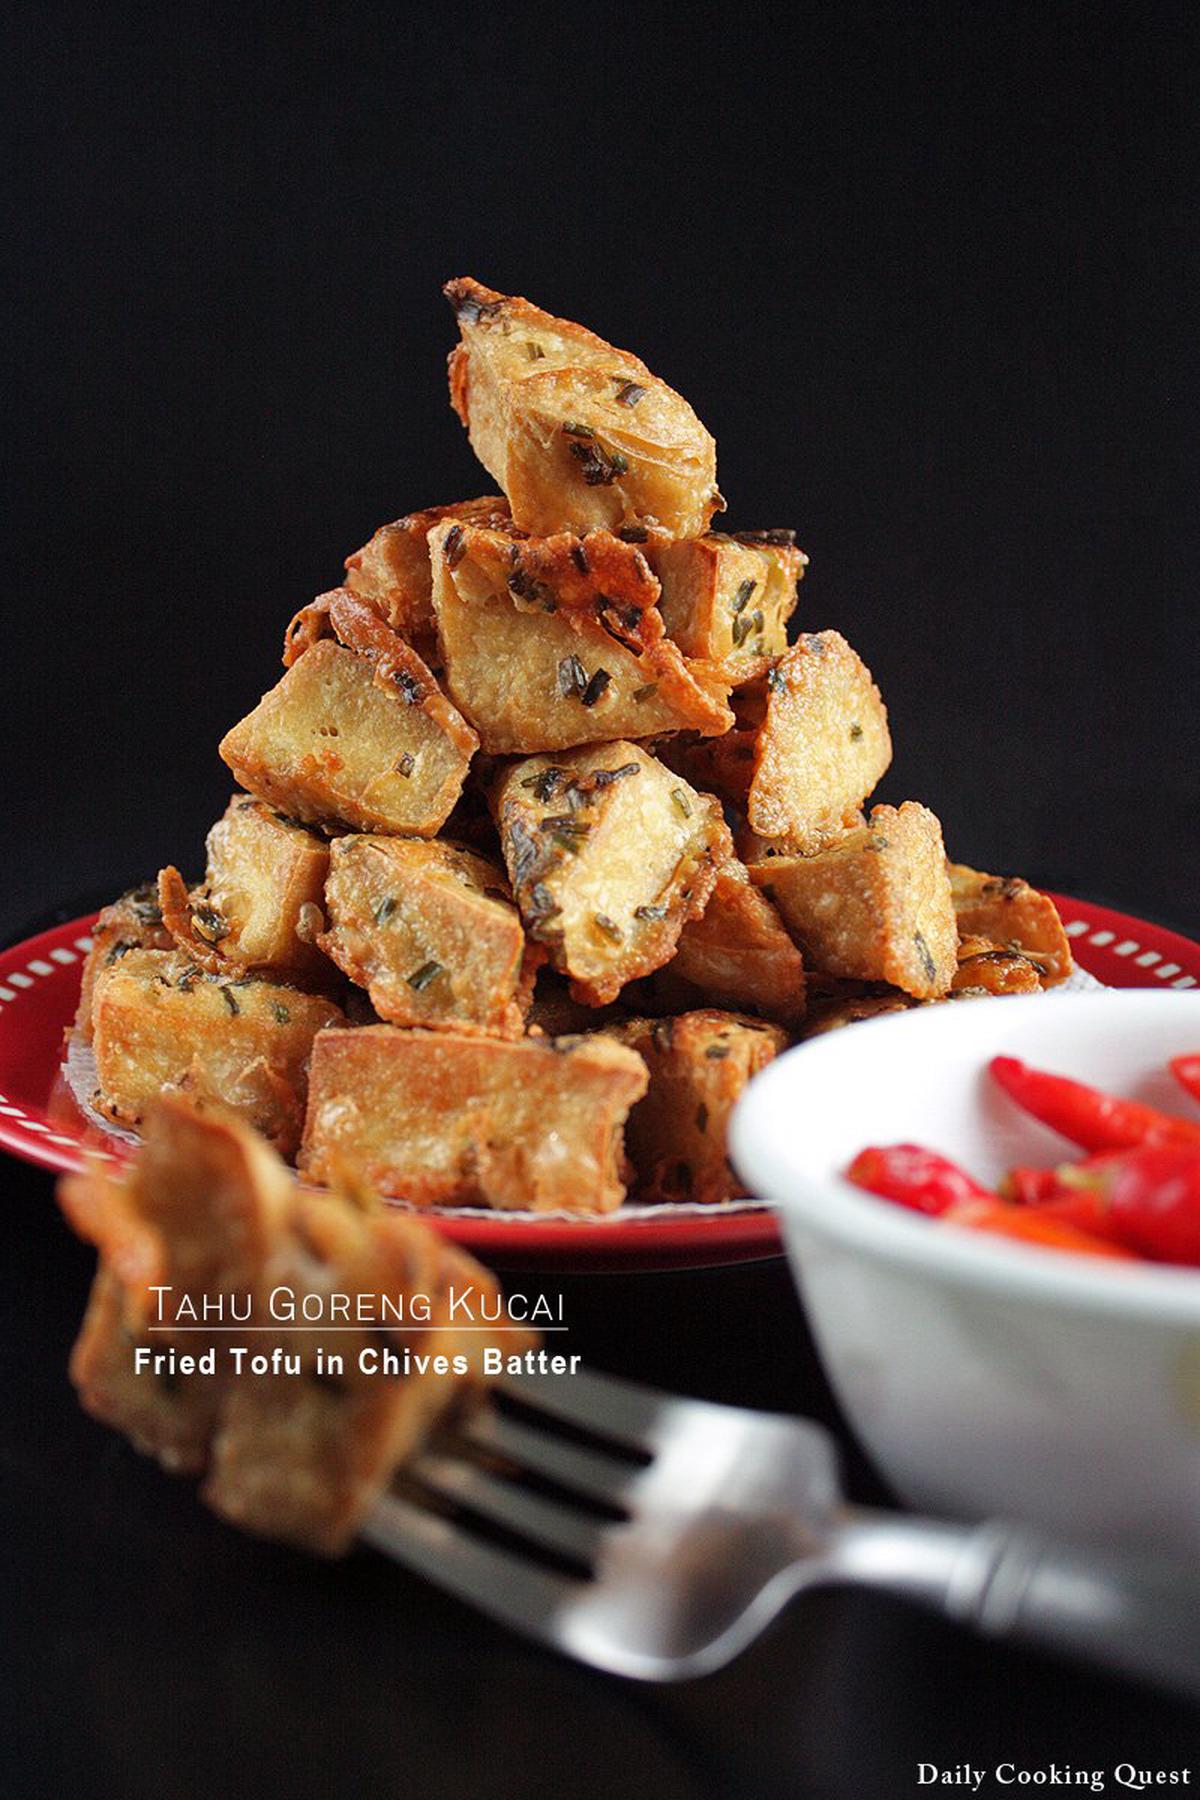 Tahu Goreng Kucai - Fried Tofu in Chives Batter